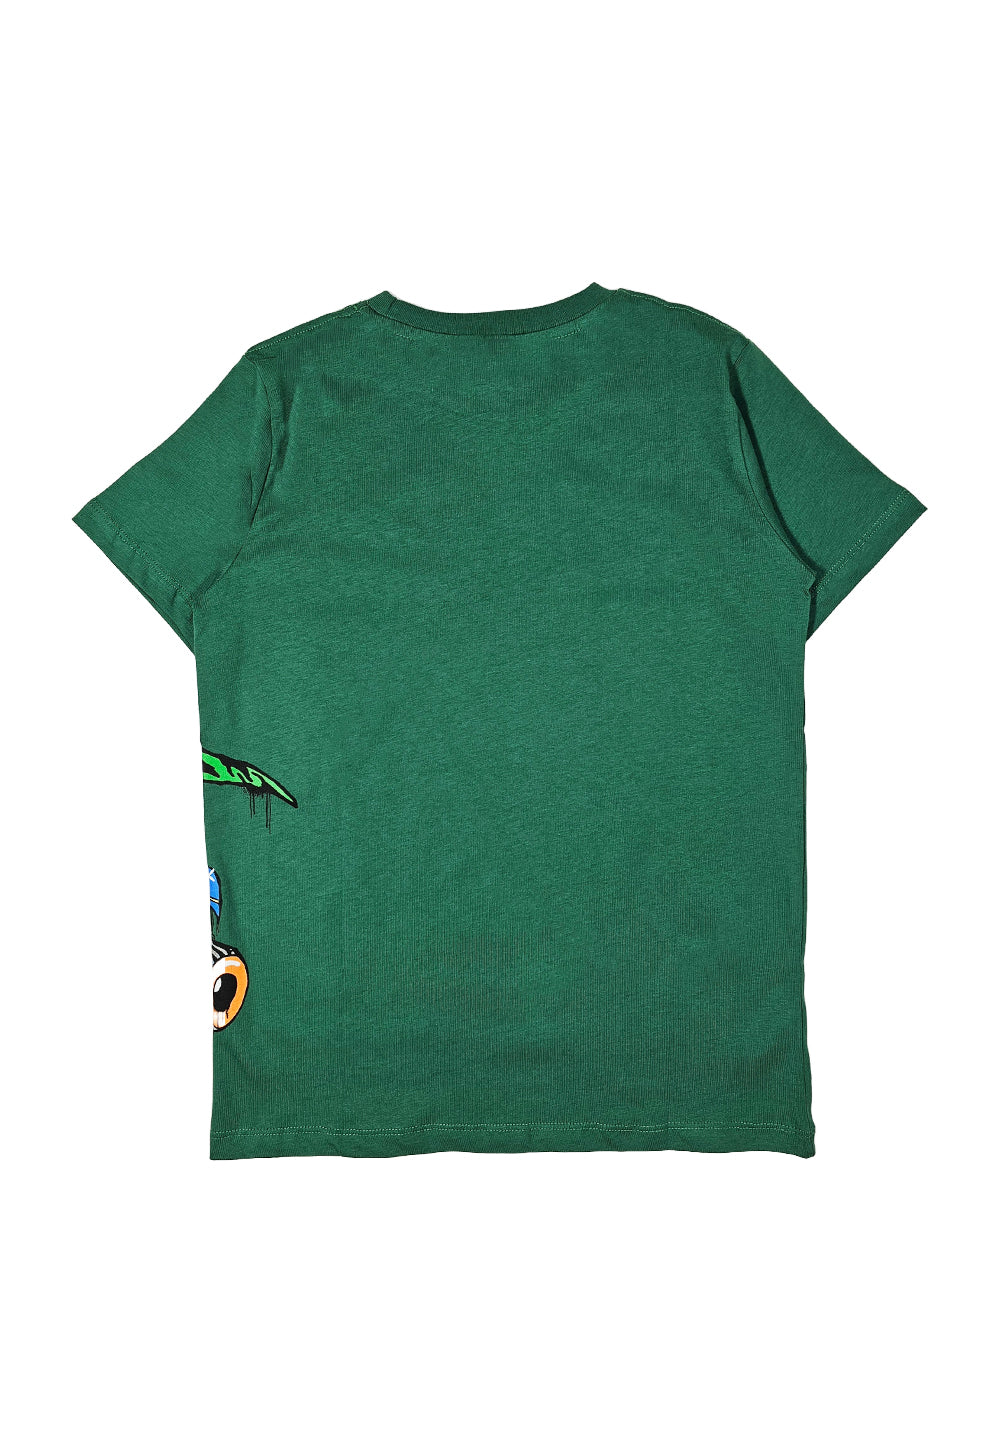 Green t-shirt for boy